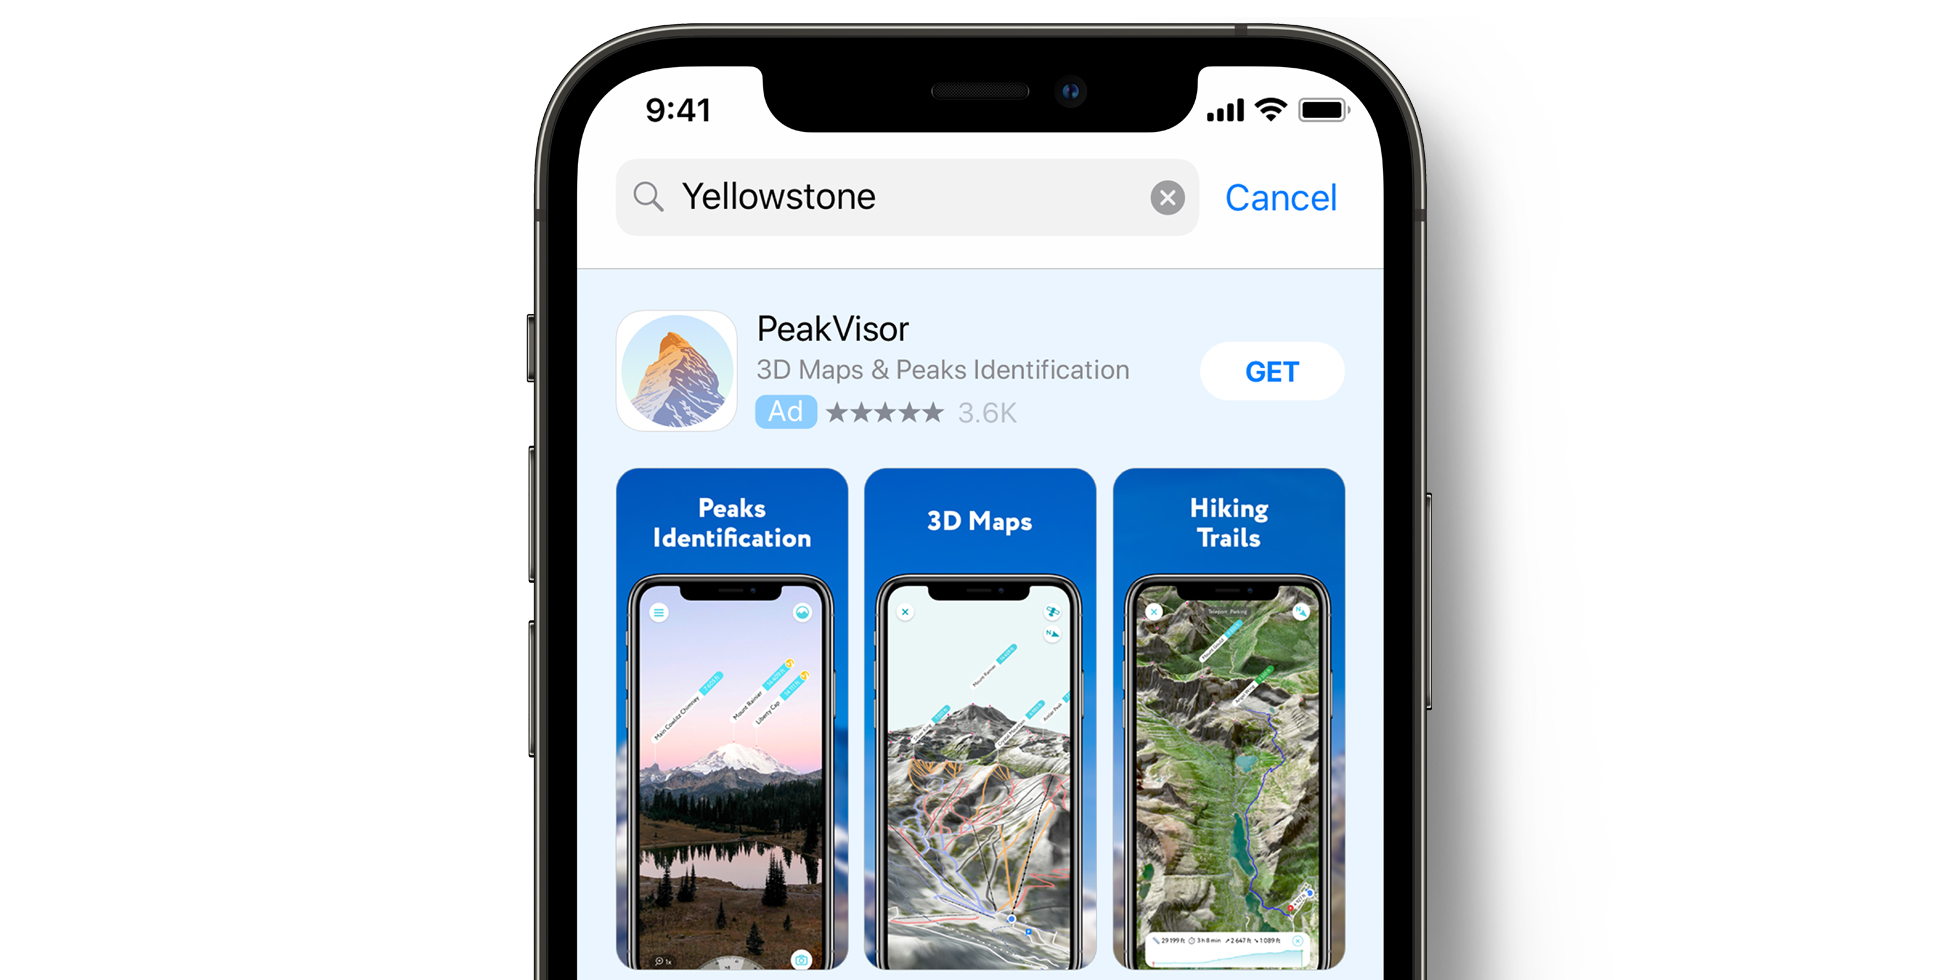 App Store의 PeakVisor 광고